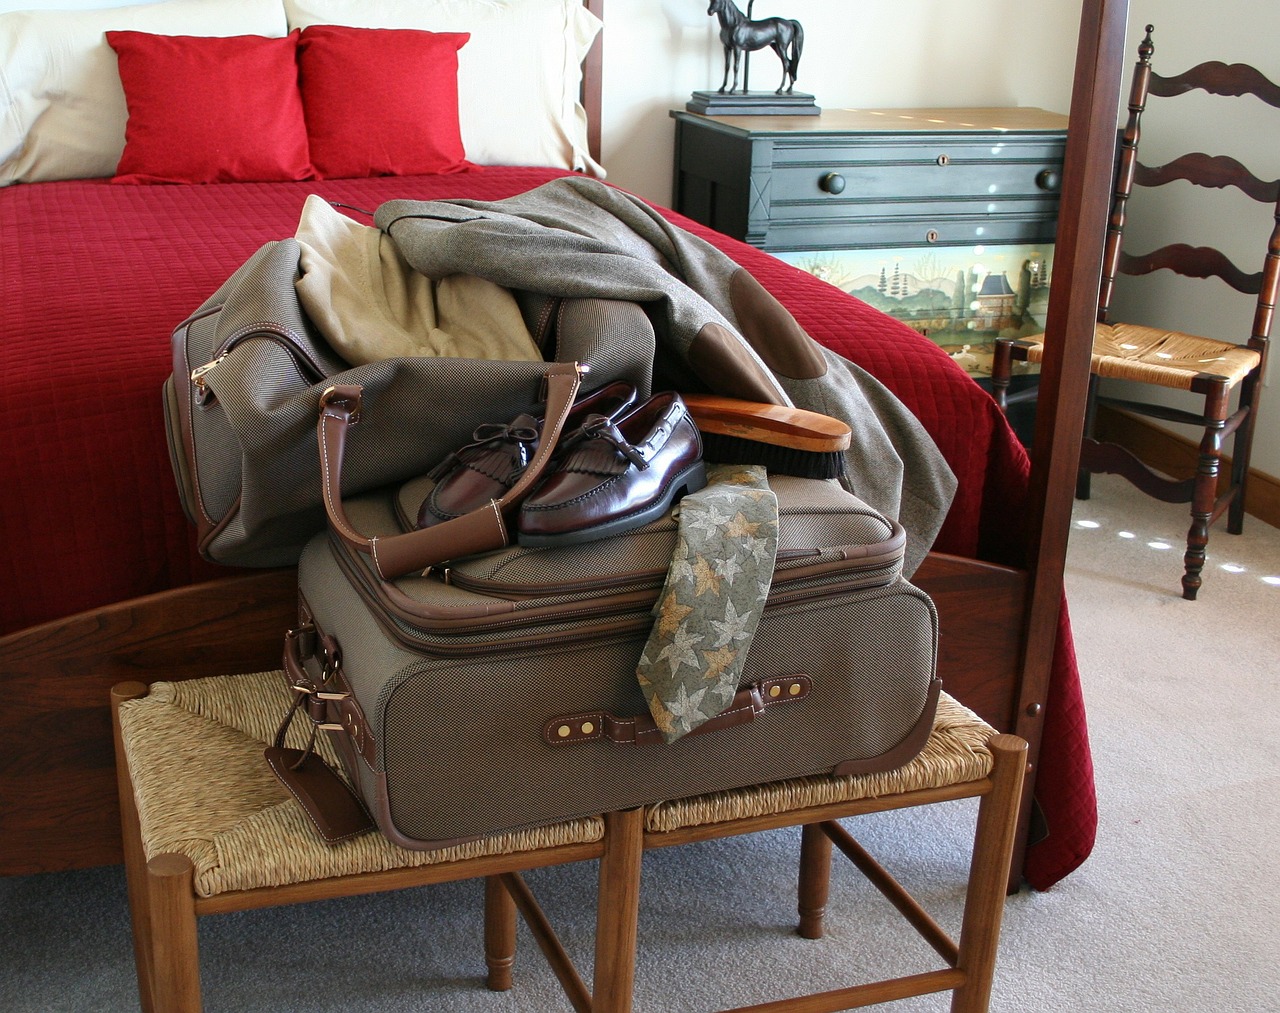 luggage suitcase shoes free photo